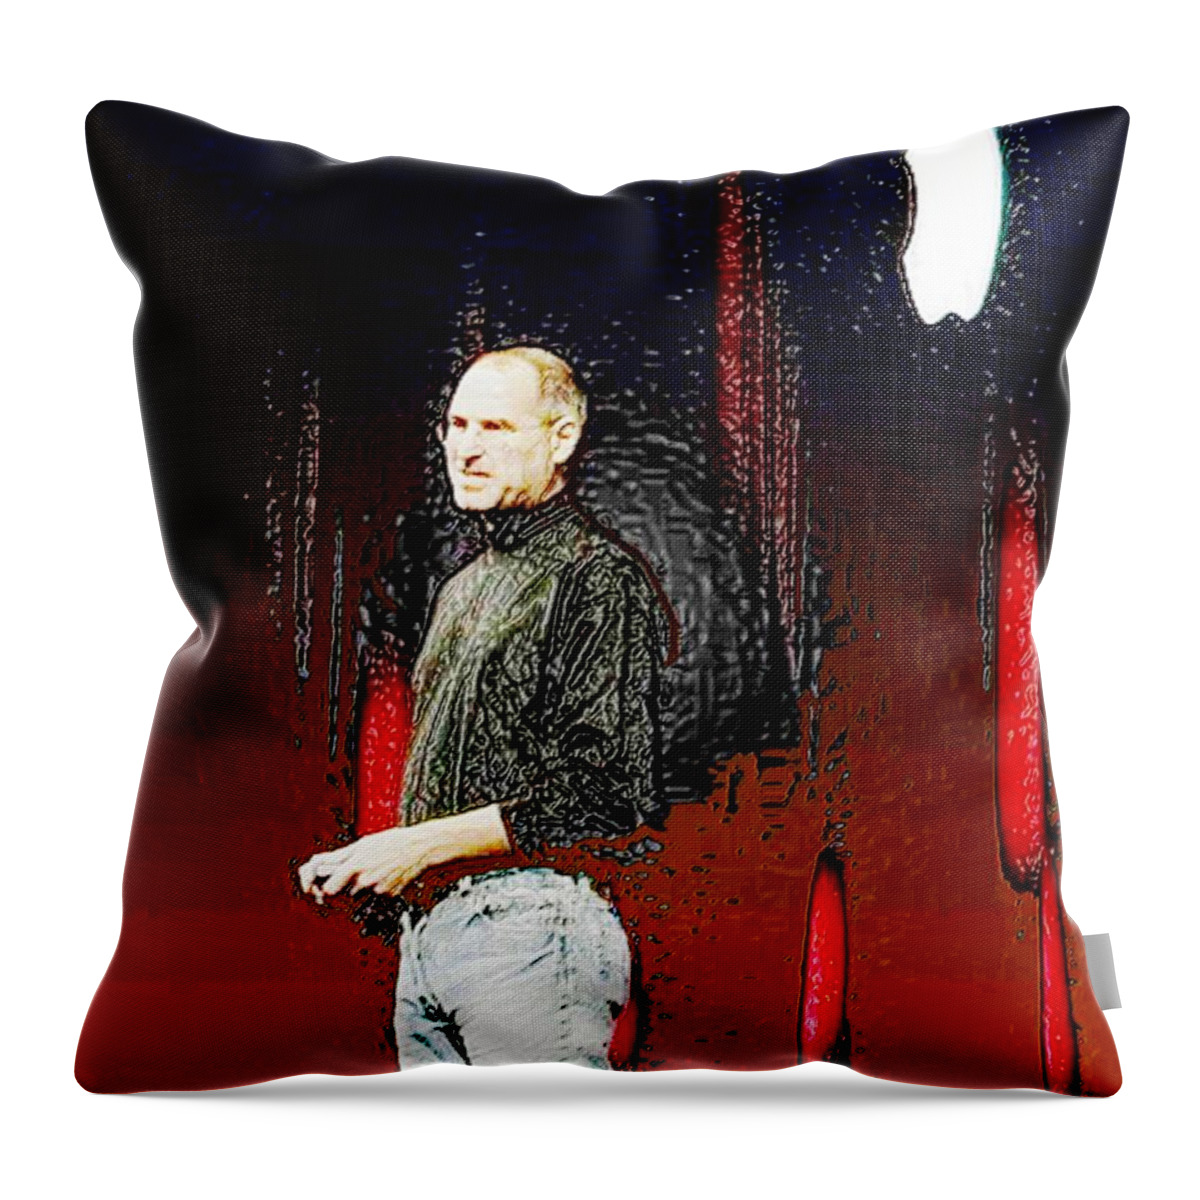 Steve Jobs Throw Pillow featuring the digital art Steve Jobz 5 by Piety Dsilva